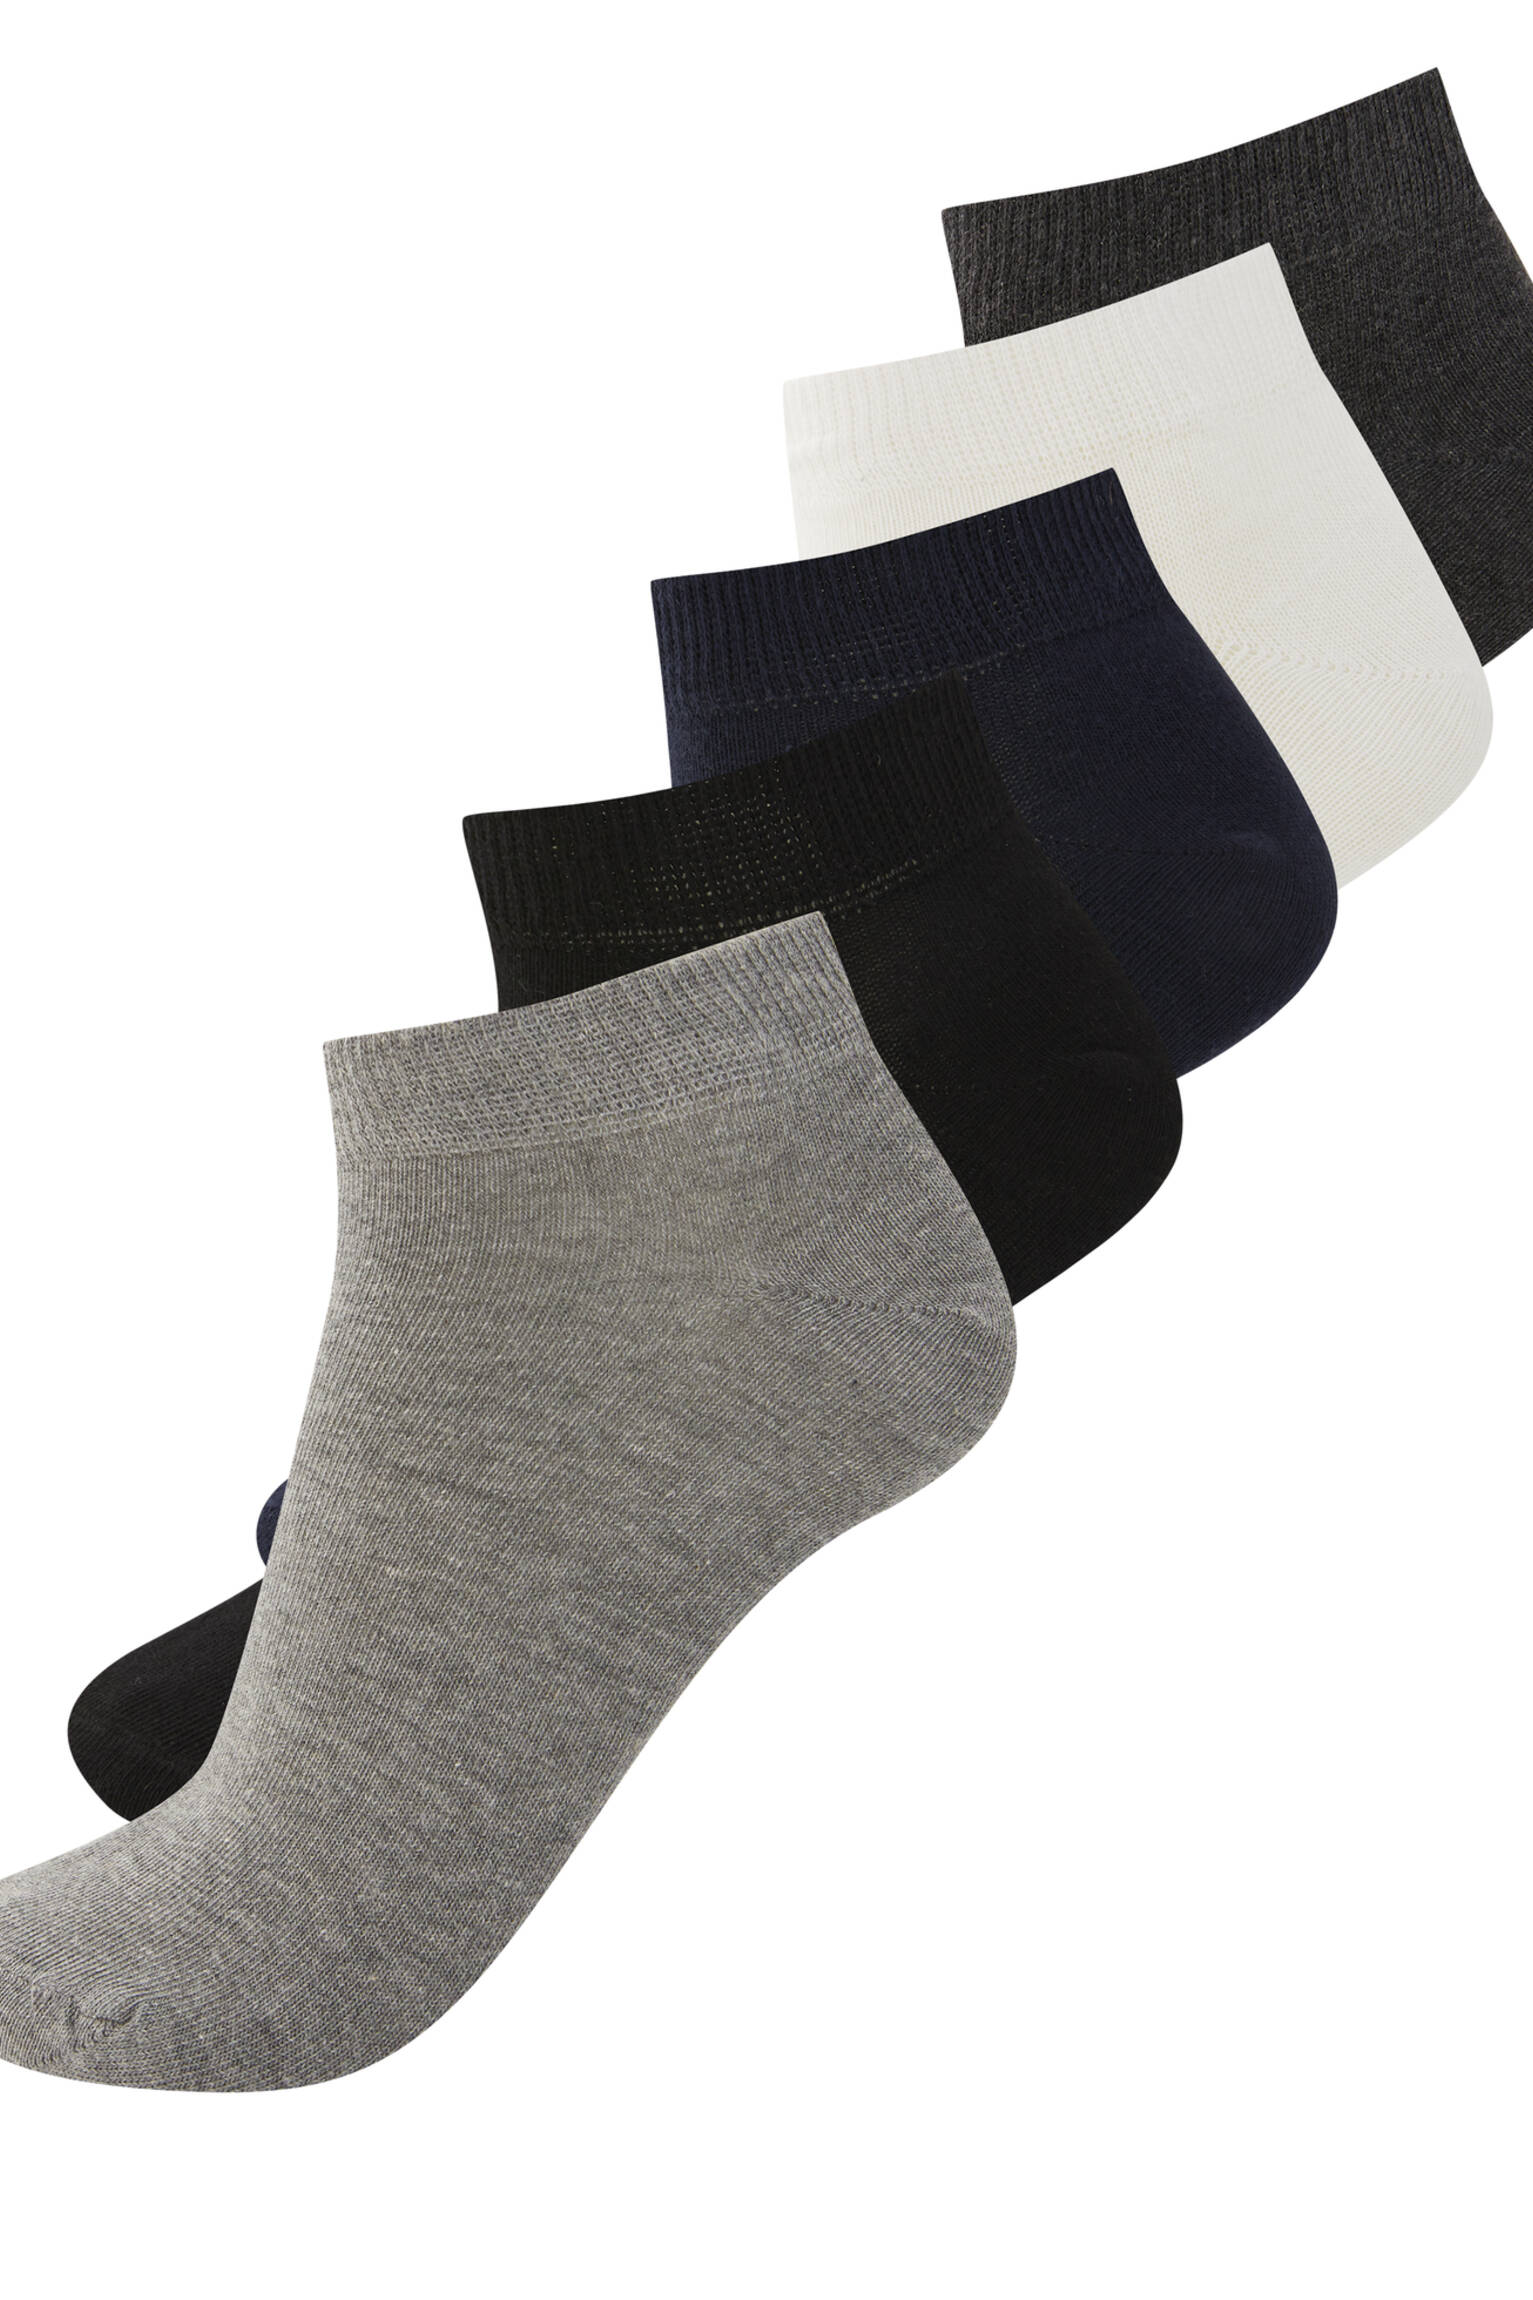 Набор из 5 пар коротких носков разных цветов РАЗНЫЕ Pull & Bear